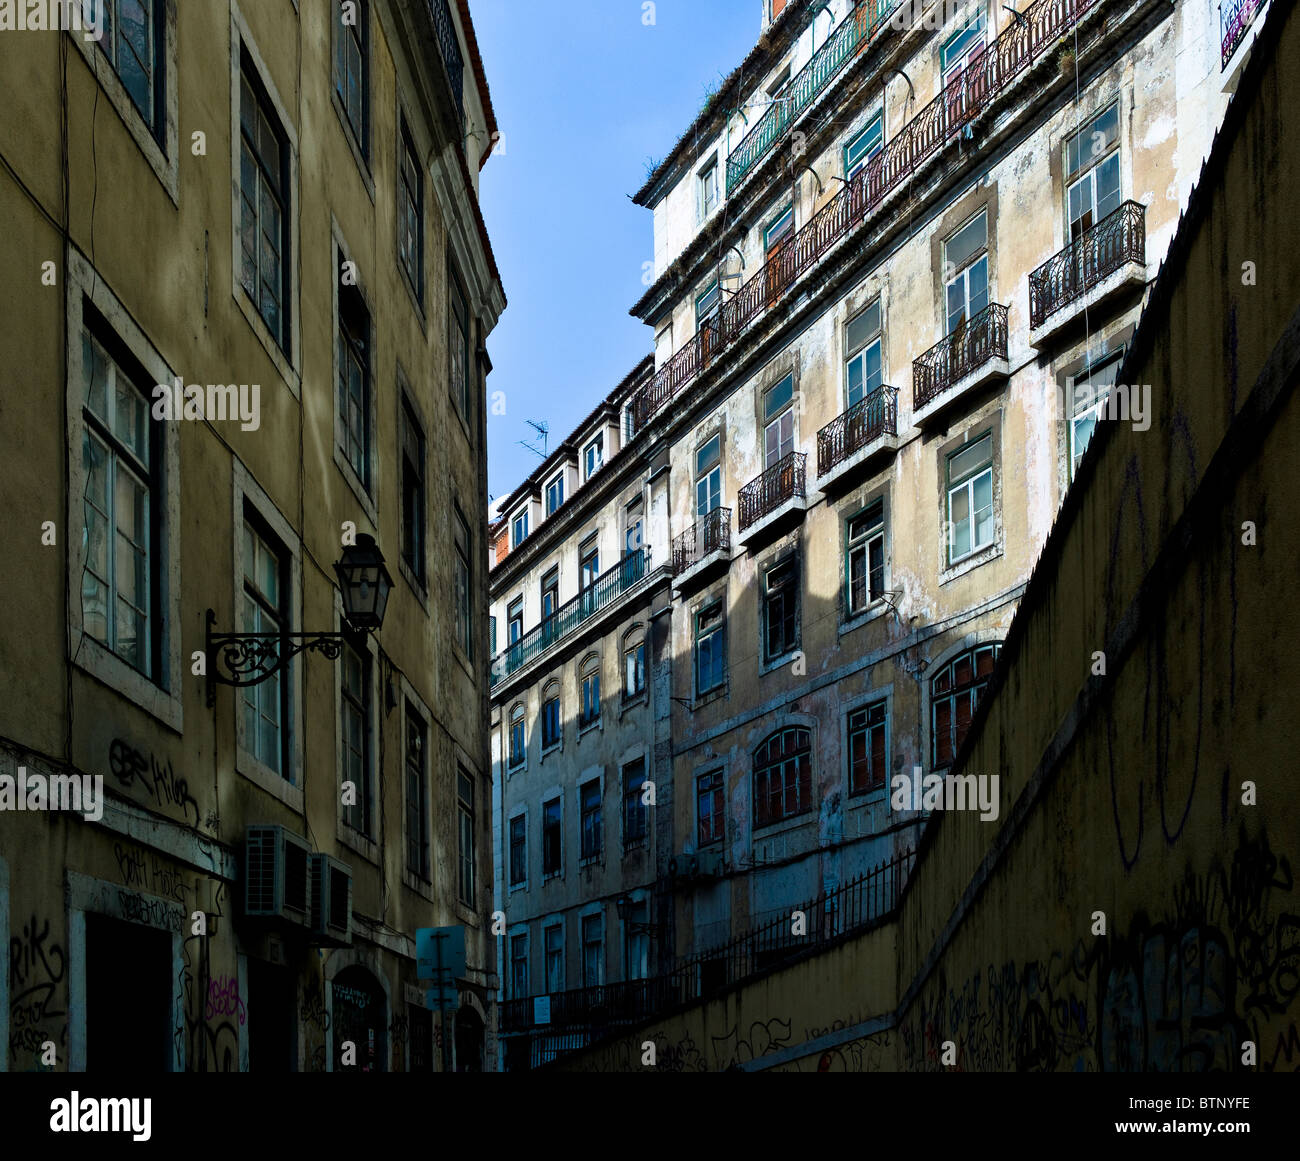 Straßenszene mit verfallenen alten Häusern, Lissabon, Portugal Stockfoto